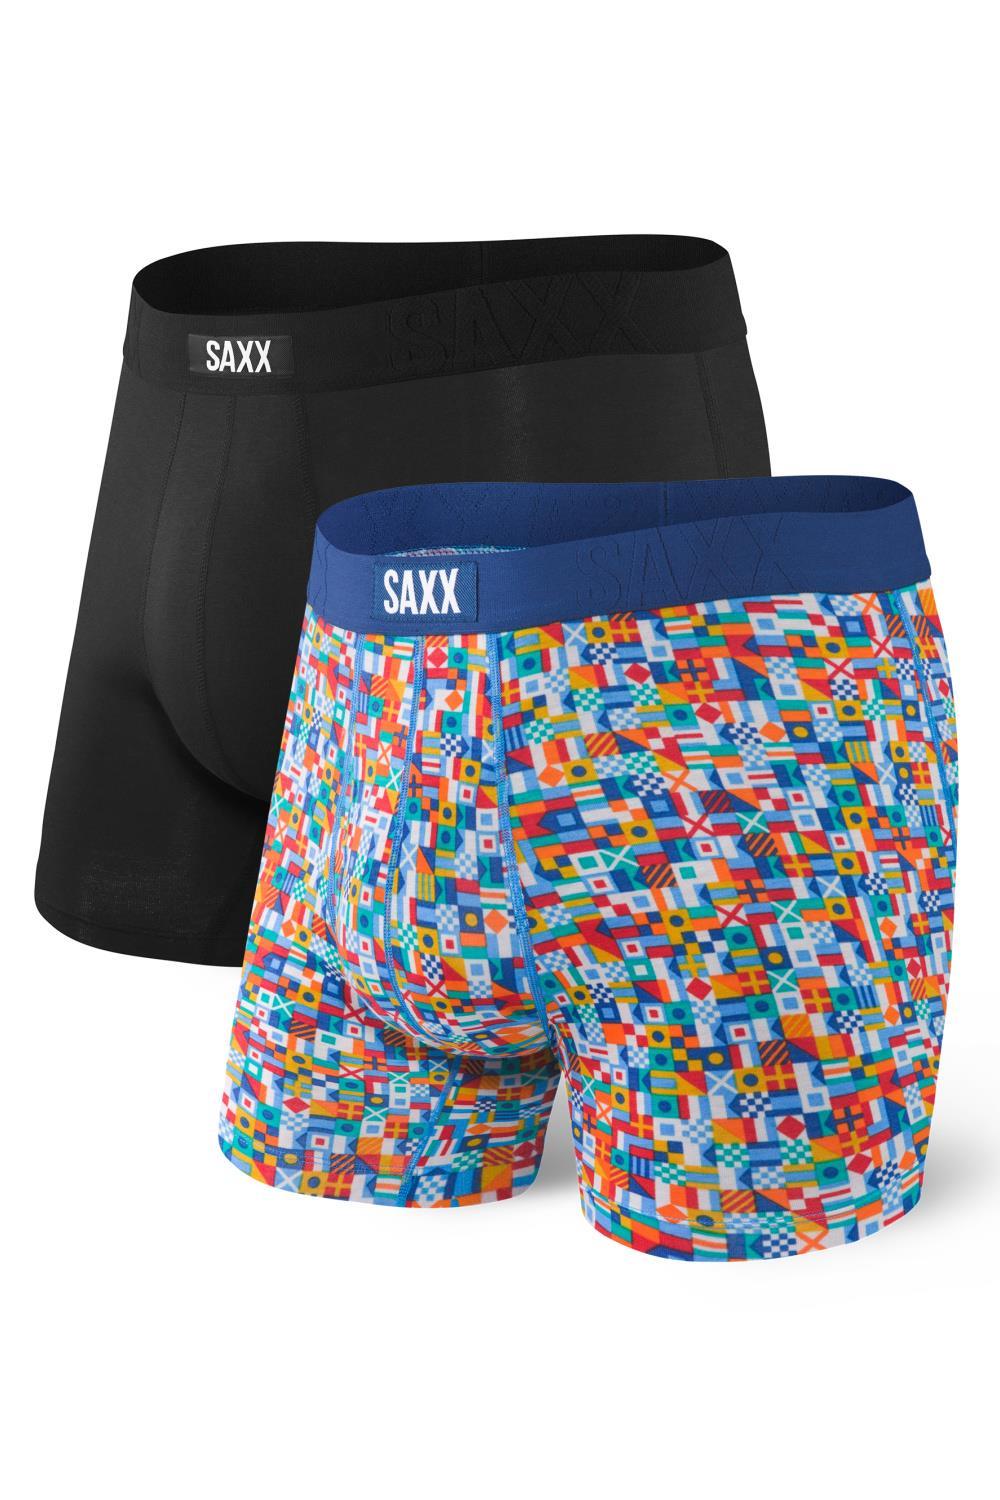 SAXX UNDERCOVER Yacht Rock Black 2 PACK Underwear